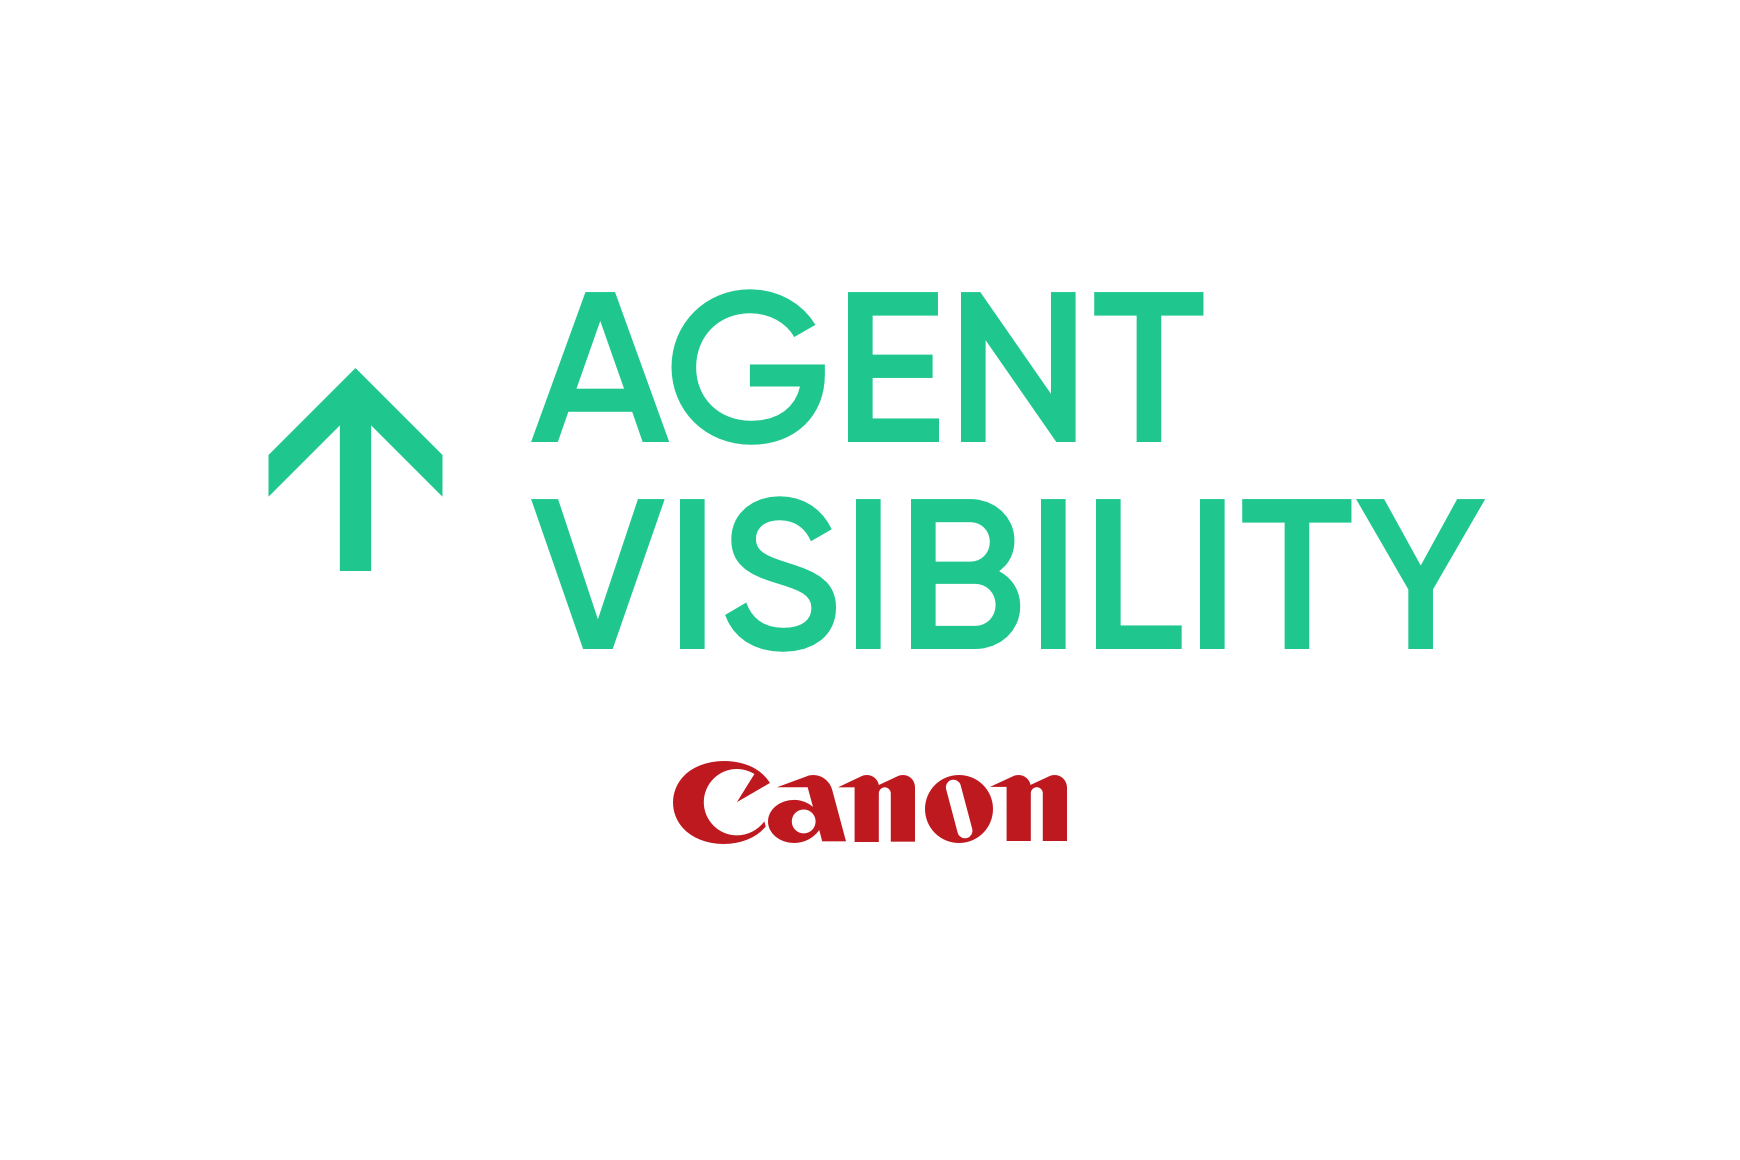 Canon: Maior produtividade e visibilidade dos agentes